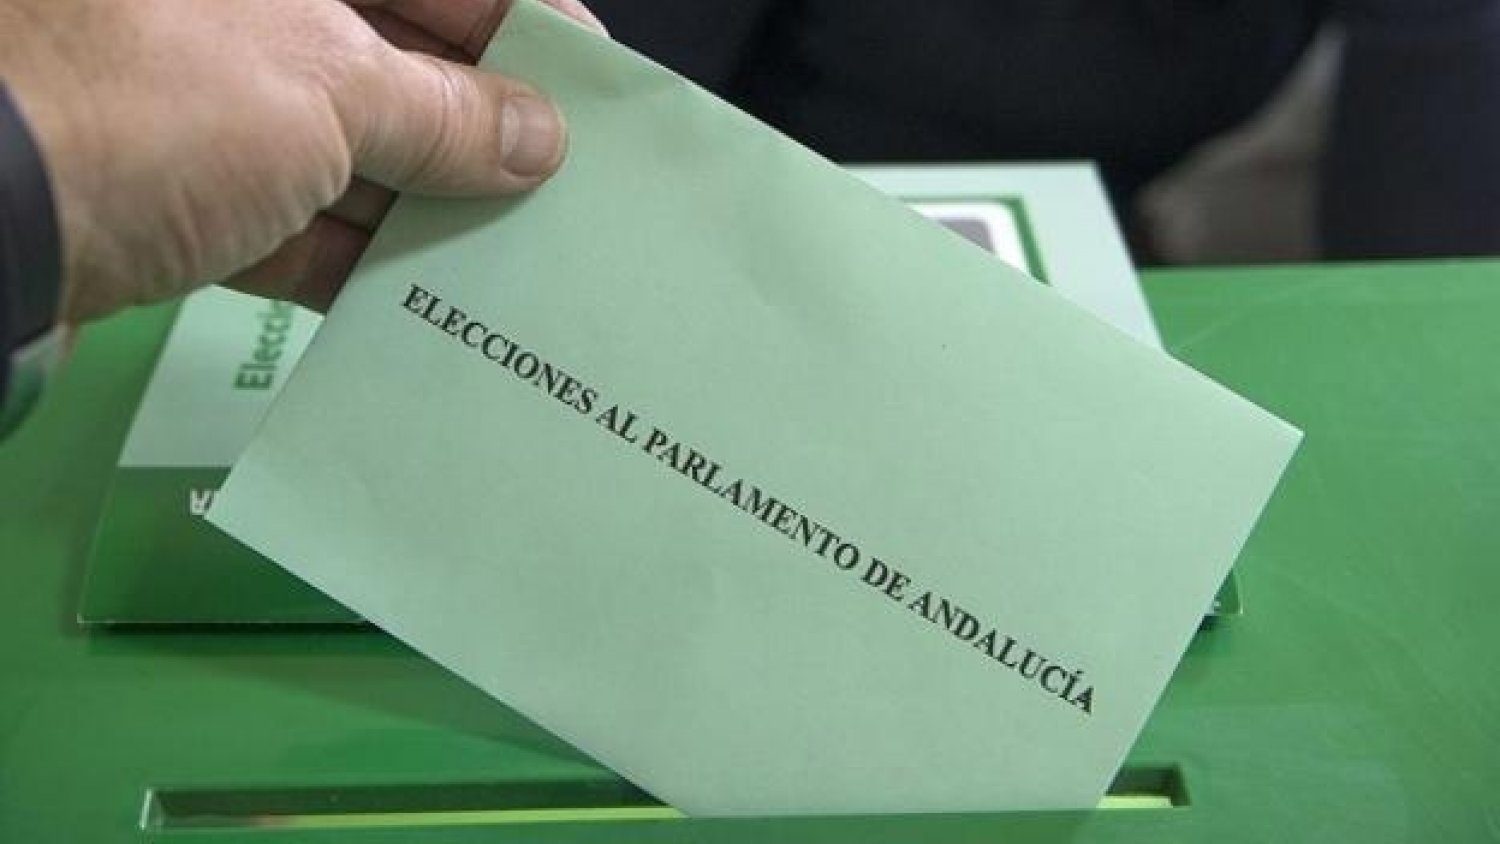 19J.- El PP obtiene la mayoría absoluta en Andalucía, PSOE pierde tres escaños, VOX apenas sube otros dos y Cs desaparece del parlamento andaluz